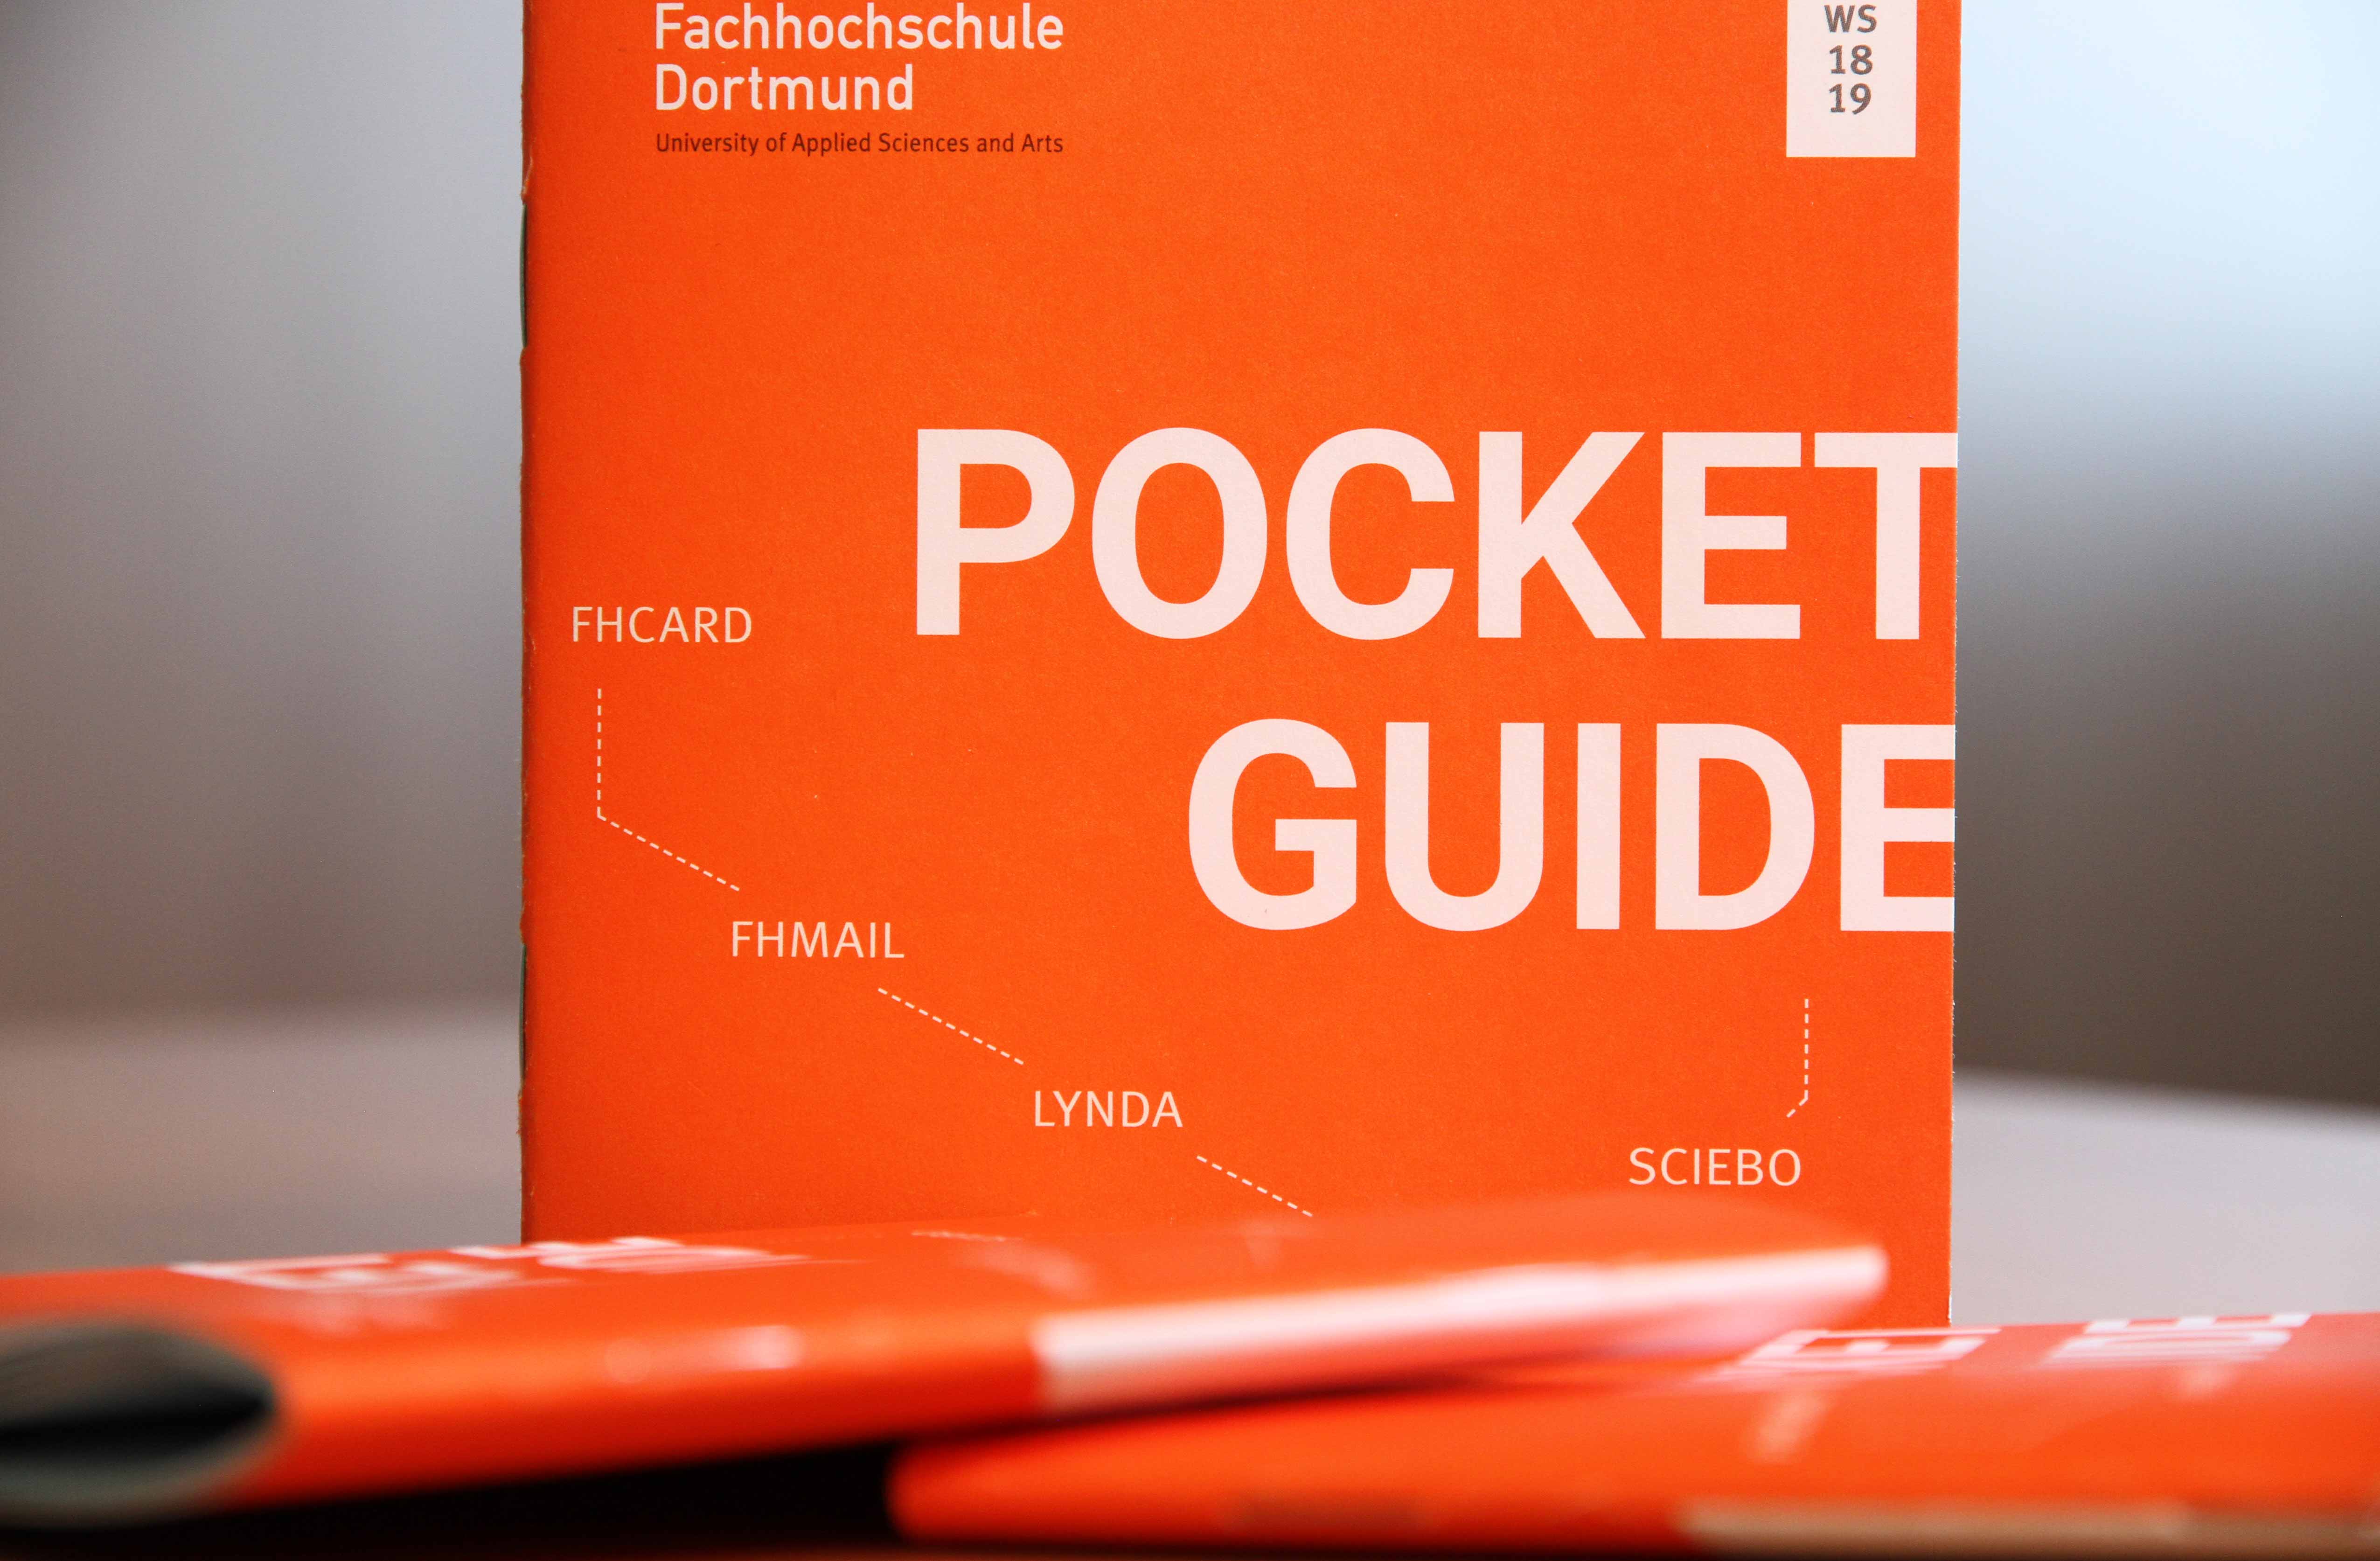 Der Pocket Guide für IT-Systeme